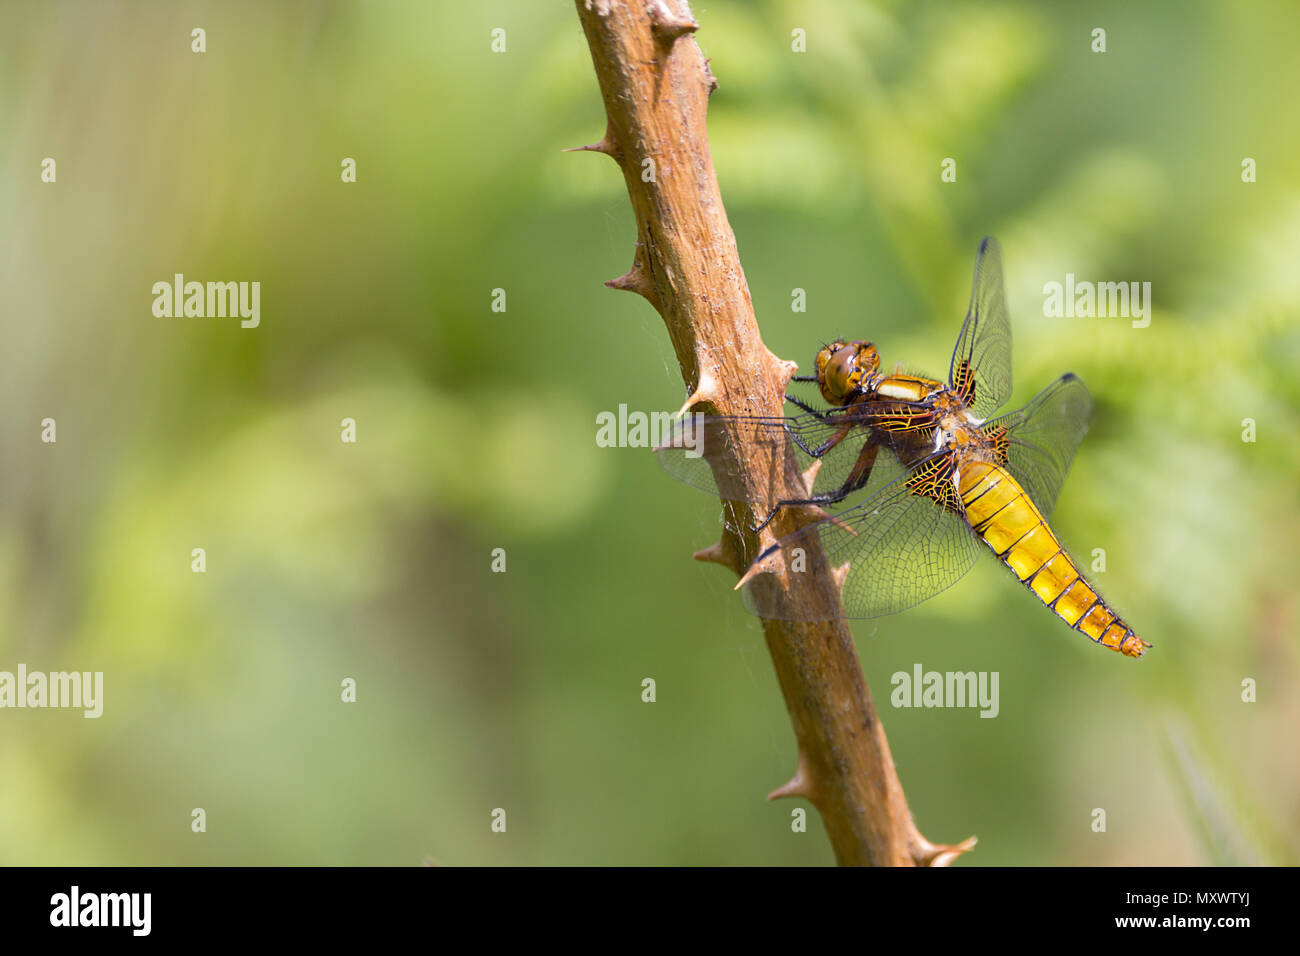 Corps large chaser (libellula depressa) l'abdomen aplati brun jaune femelle ou mâle immature perché sur twiggy la végétation. La base de l'aile brun. Banque D'Images